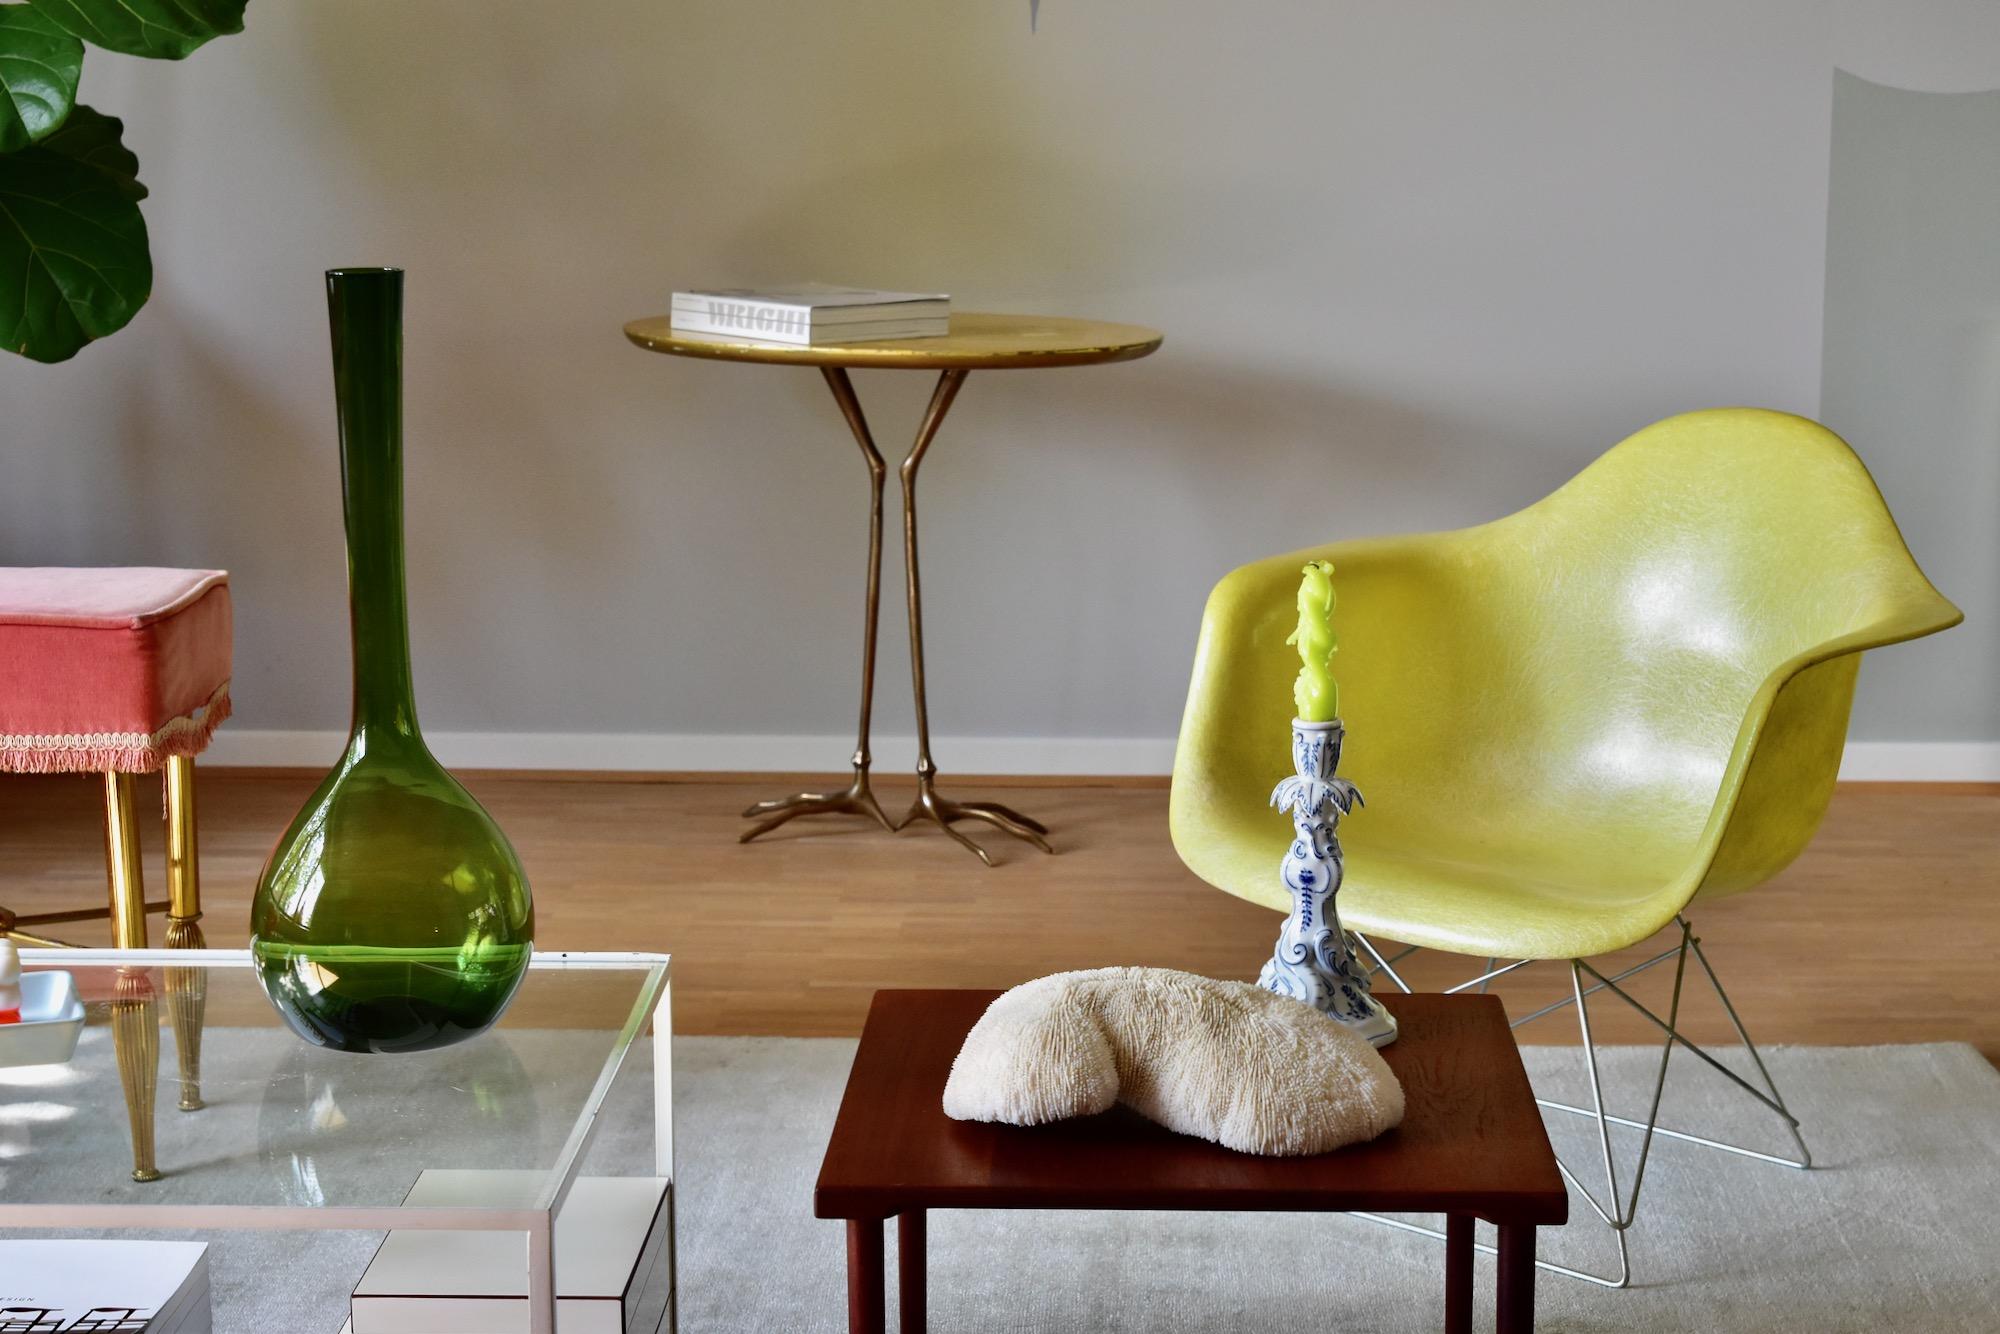 Mid-20th Century Arthur Percy Modern Art Glass Vase for Gullaskruf Made in Sweden